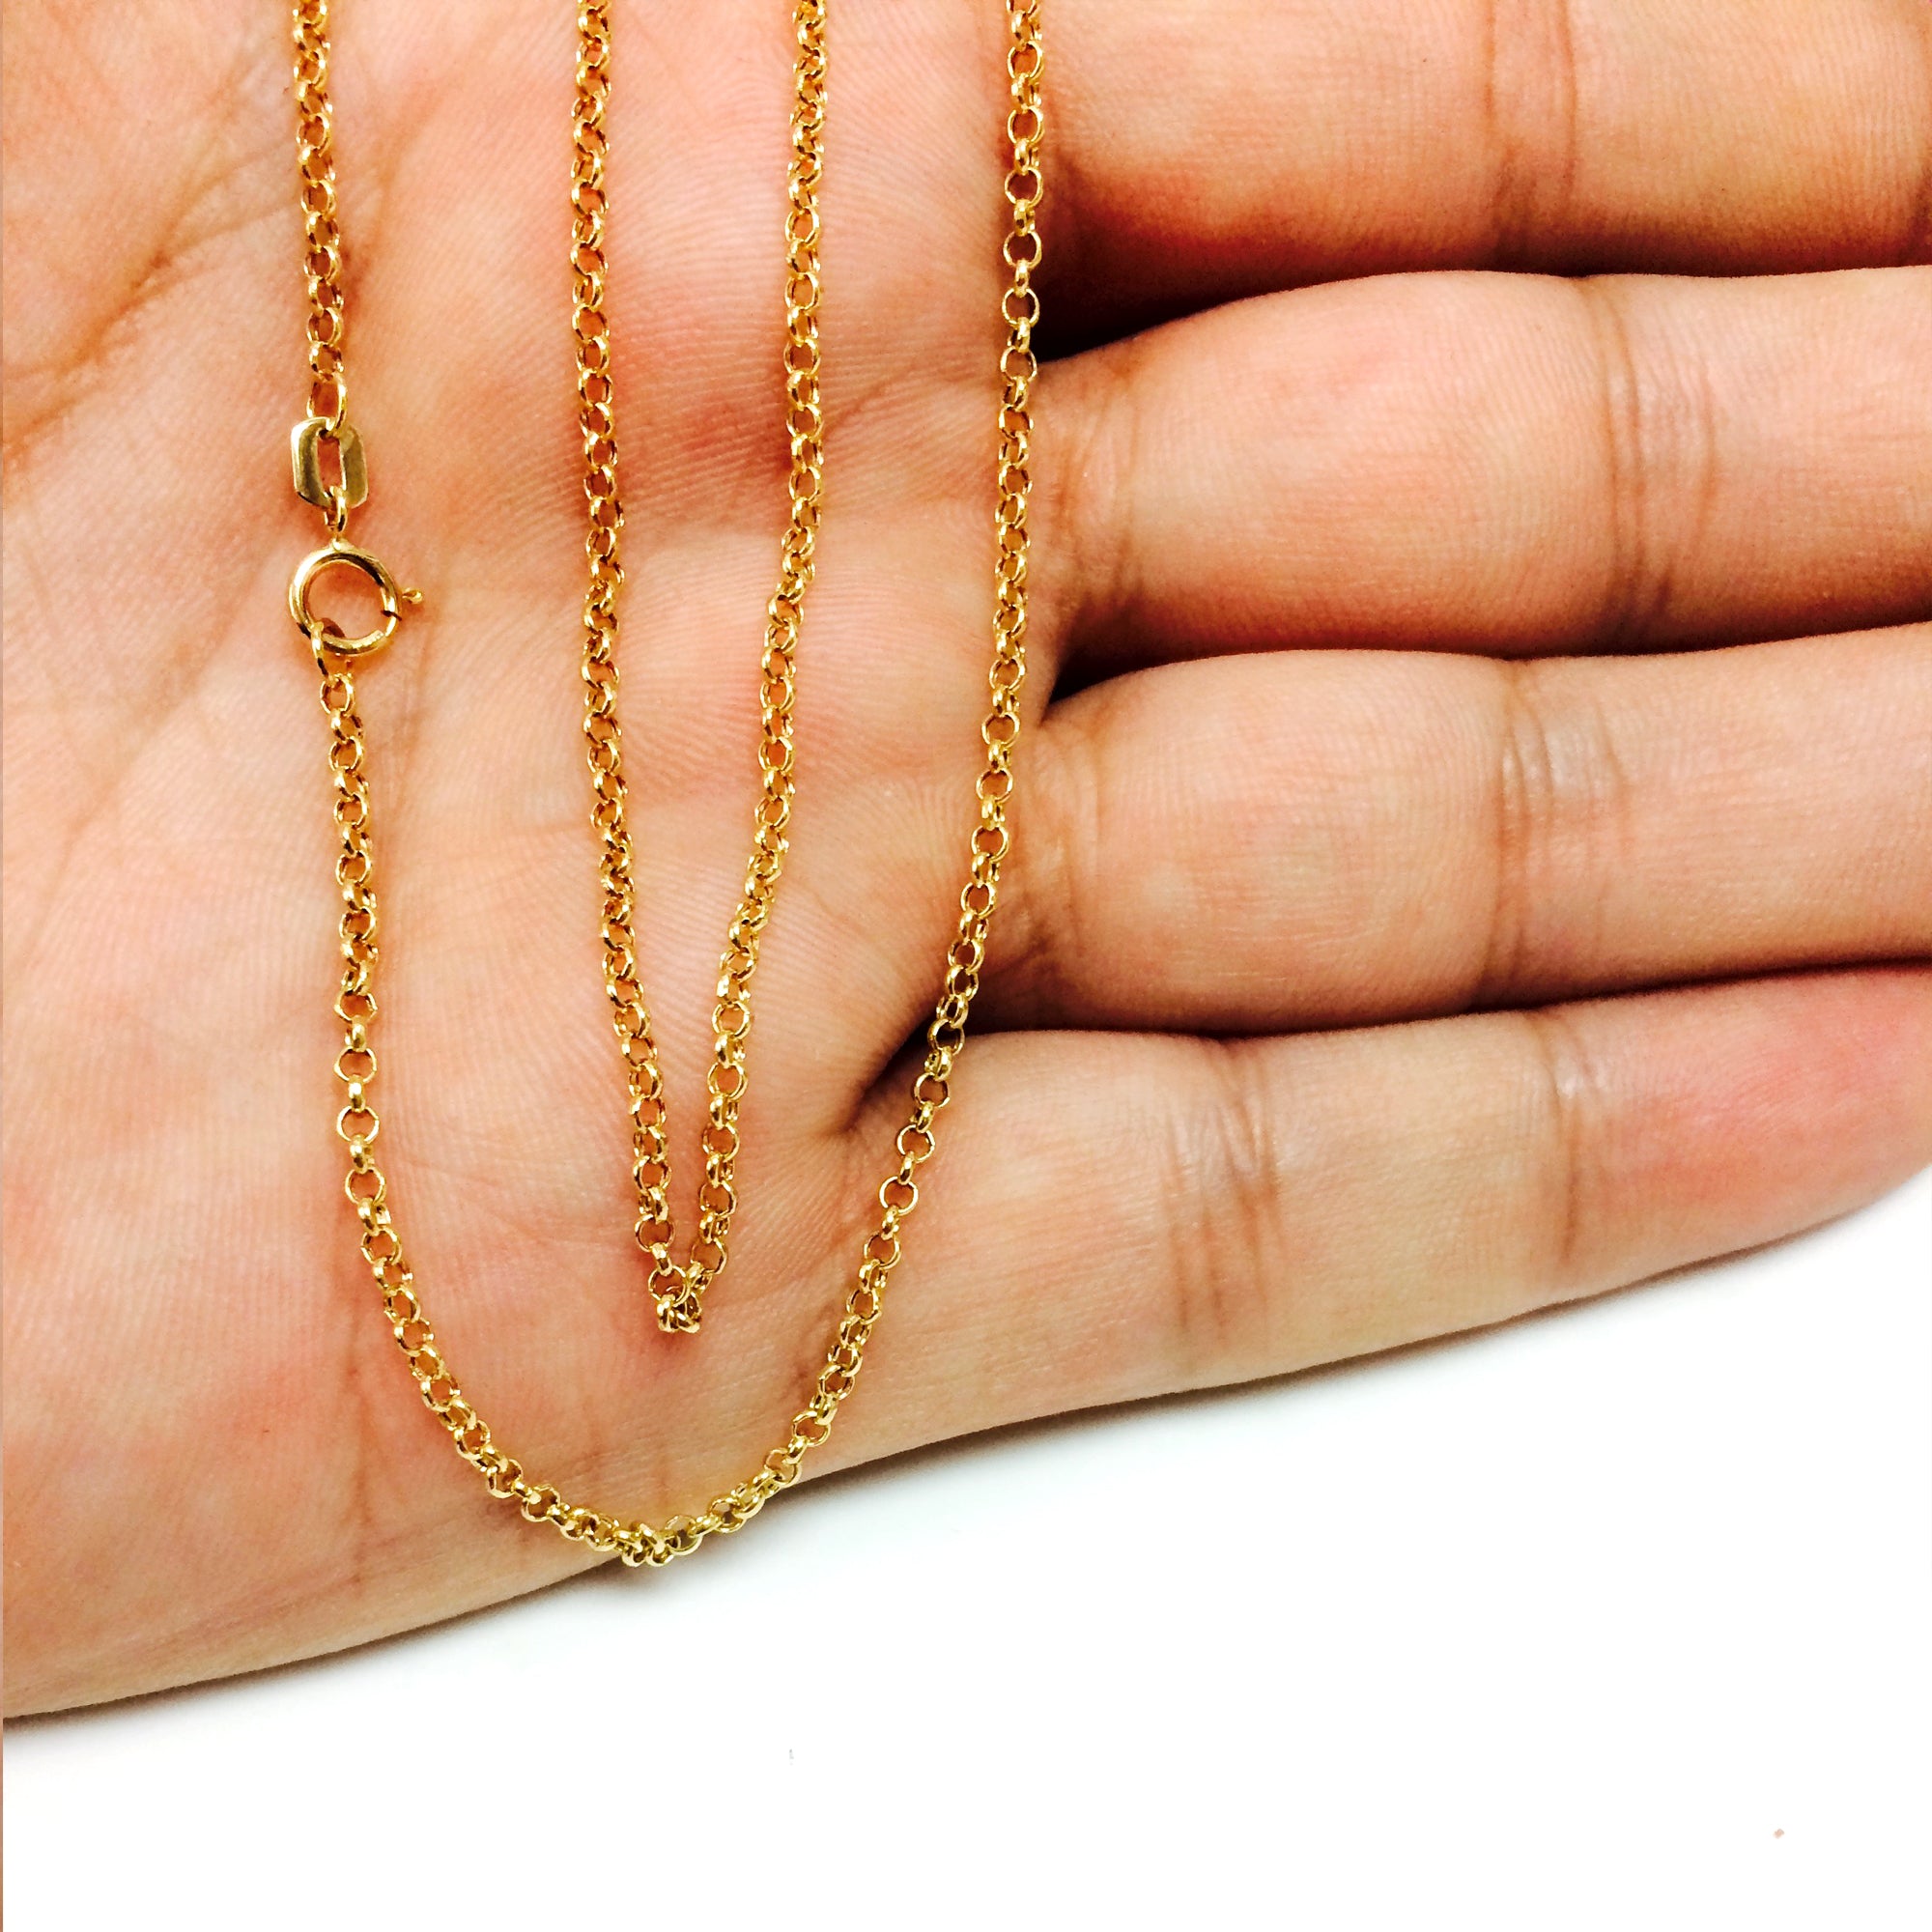 Collar de cadena de eslabones Rolo redondos de oro amarillo de 10 quilates, joyería fina de diseño de 1,9 mm para hombres y mujeres